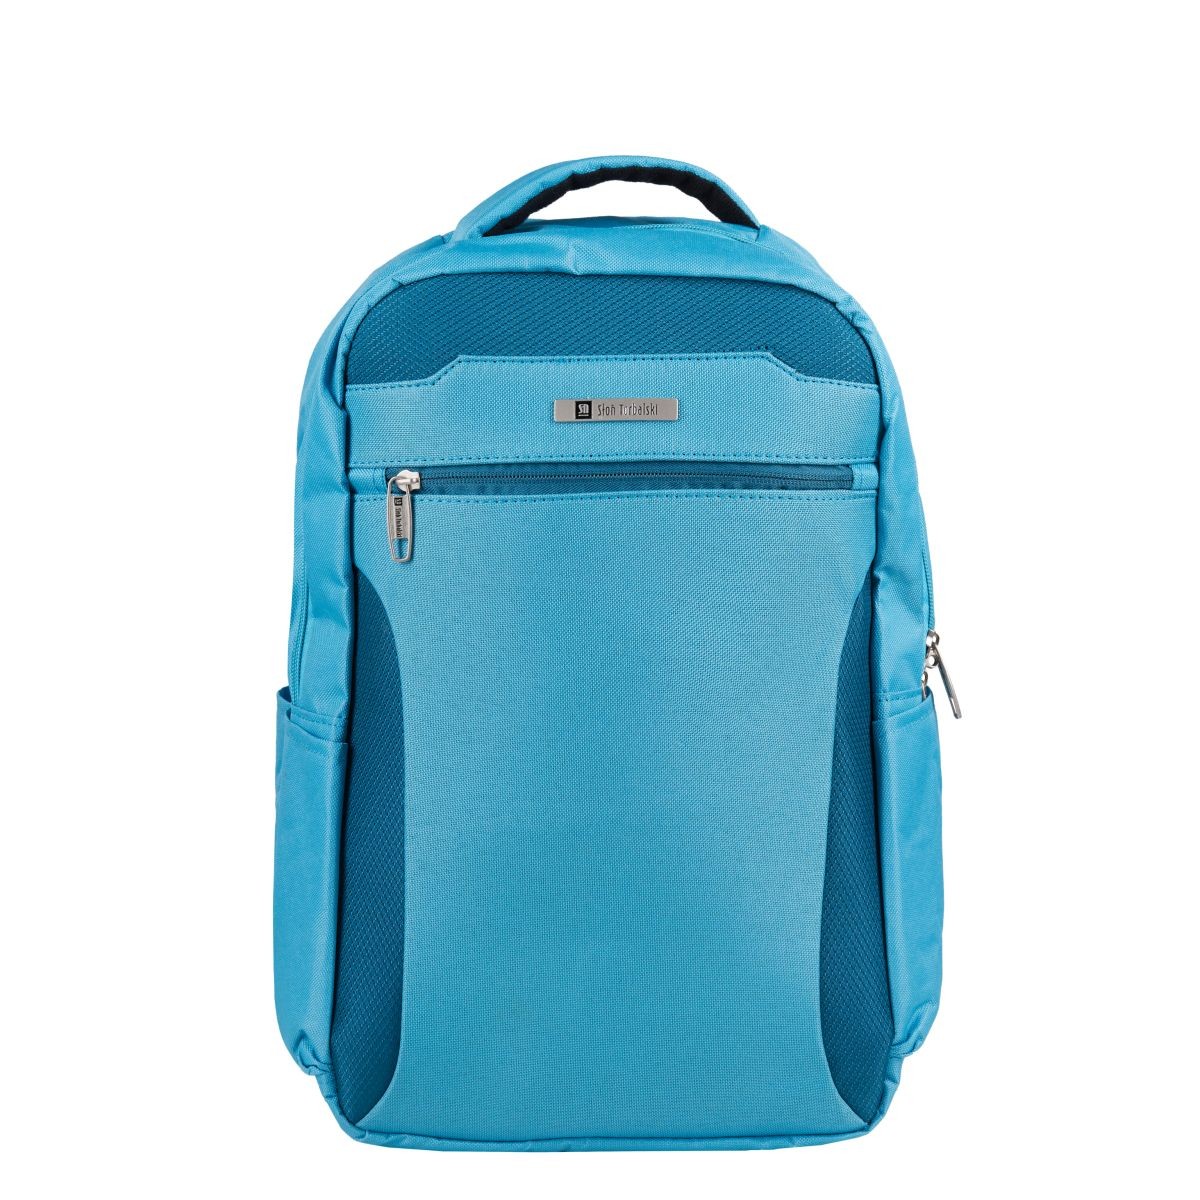 niebieski plecak podróżny 40x20x25 cm bagaż podręczny z rączką i uchwytem na walizkę